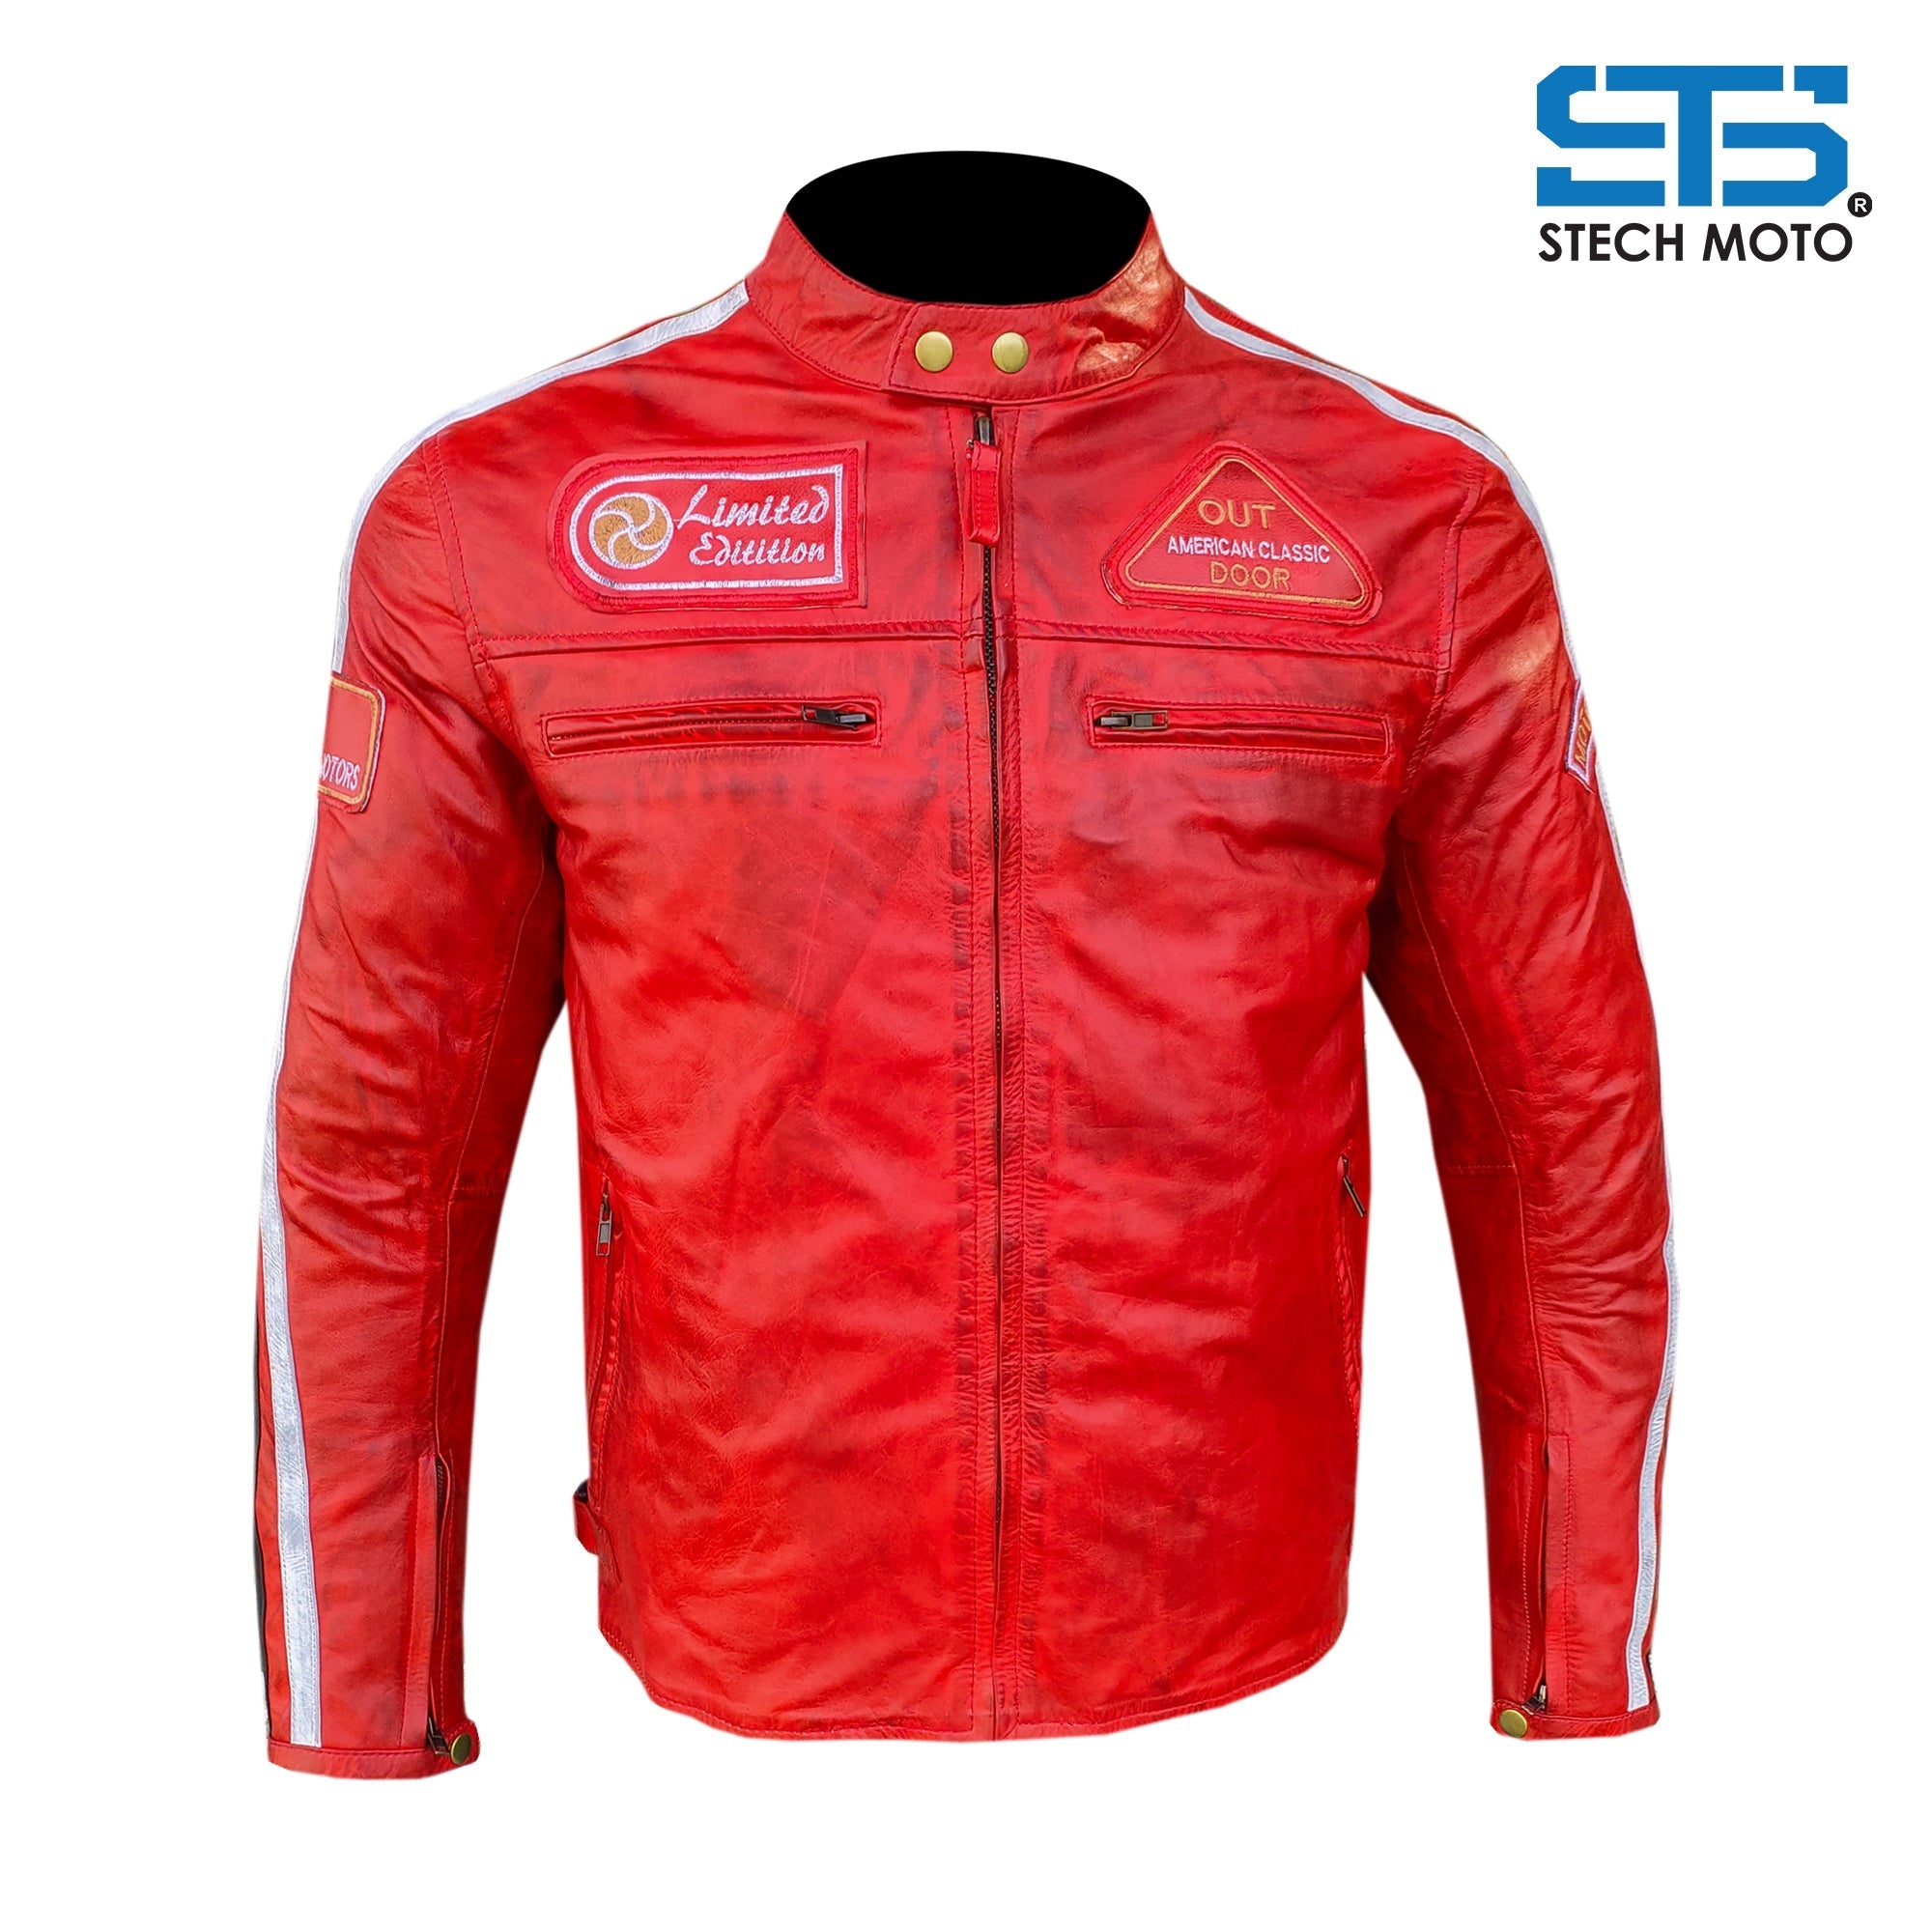 Stechmoto ST 1735 Vintage Custom &amp; Café Race Men's Motorcycle Leather Jacket